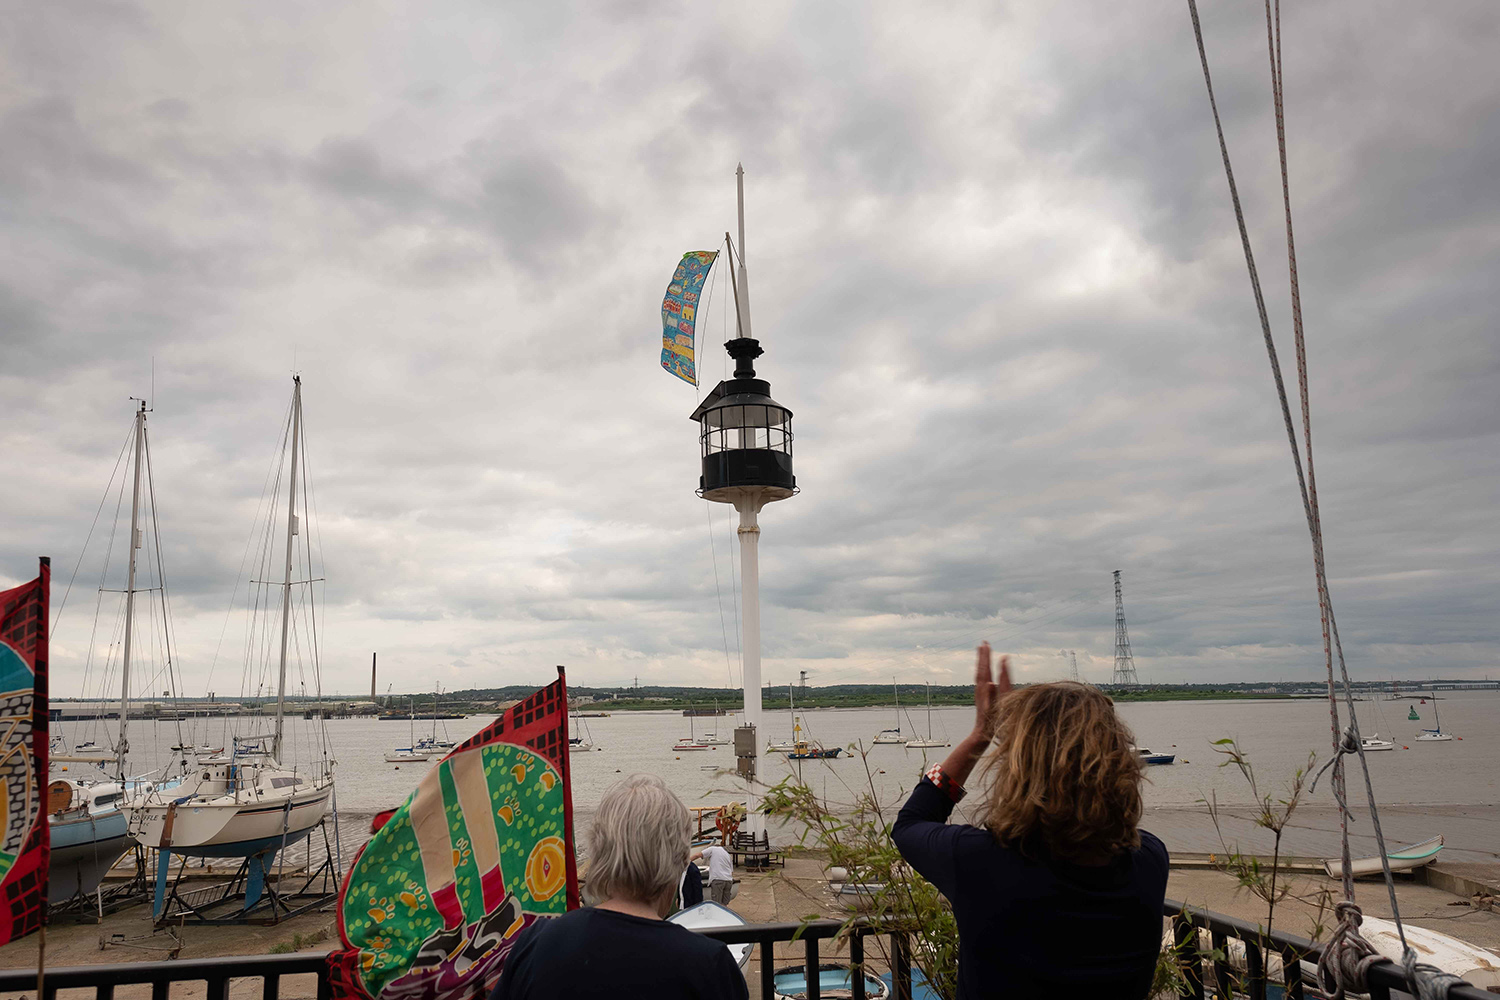 A festival flag is raised on the flag pole at Thurrock Yacht Club